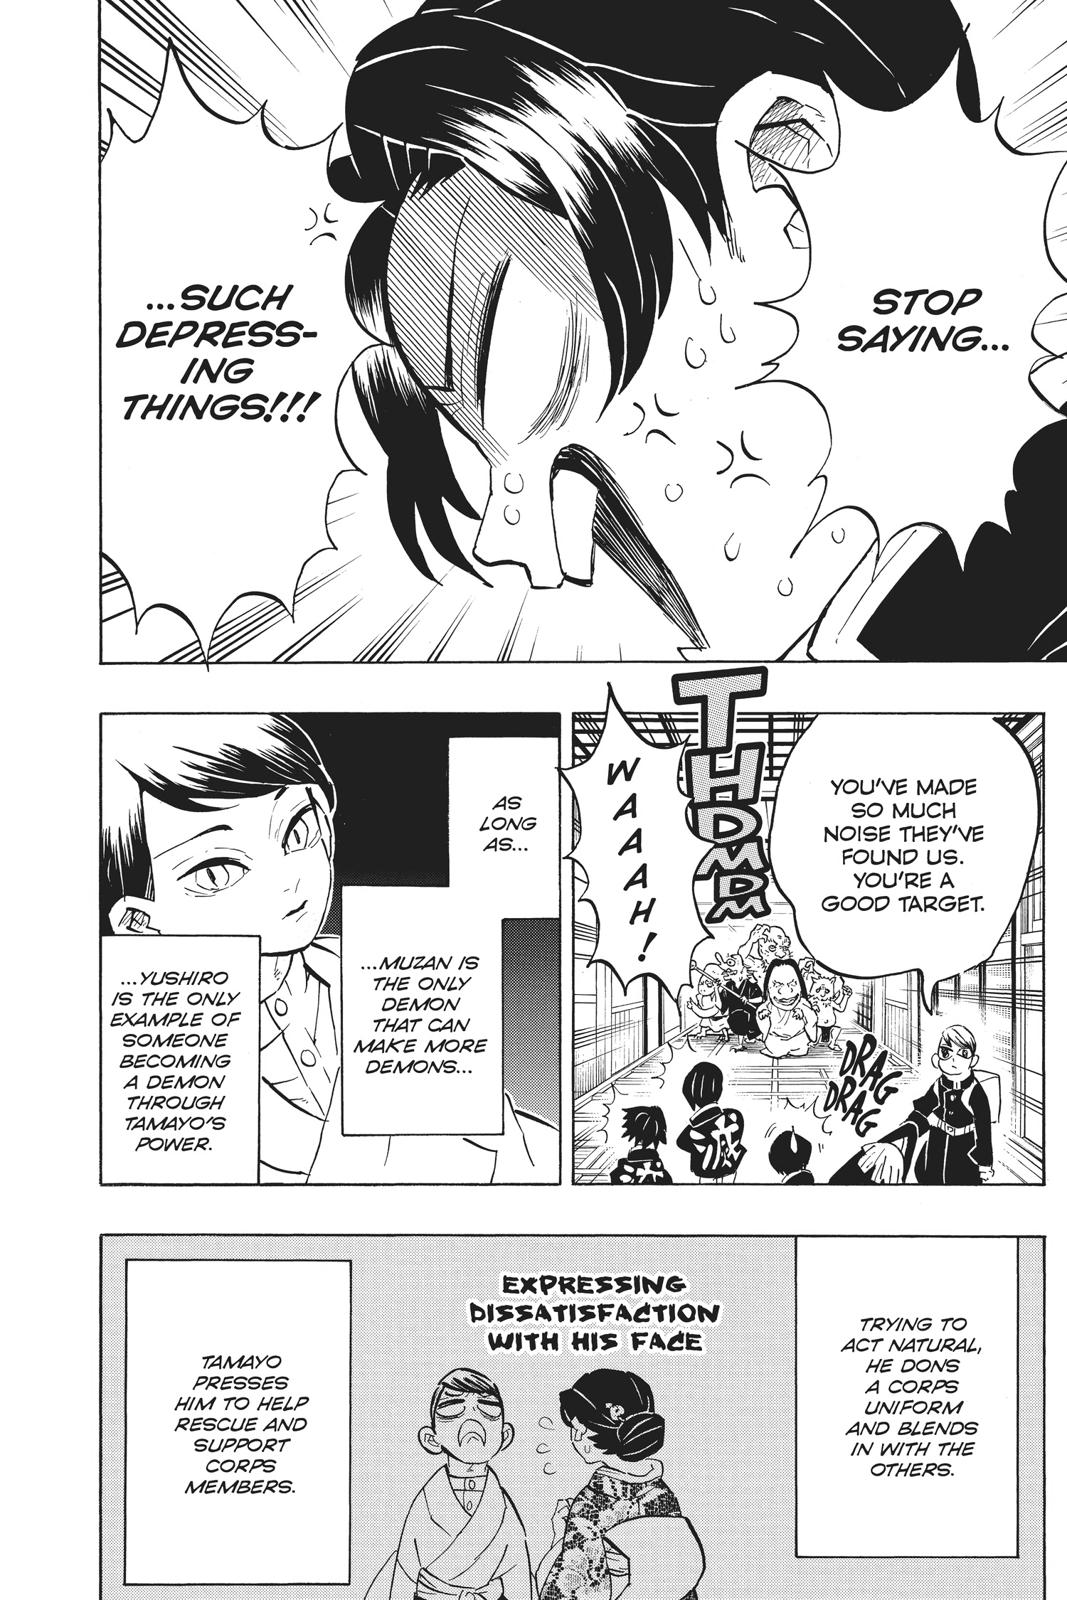 Demon Slayer Manga Manga Chapter - 146 - image 5